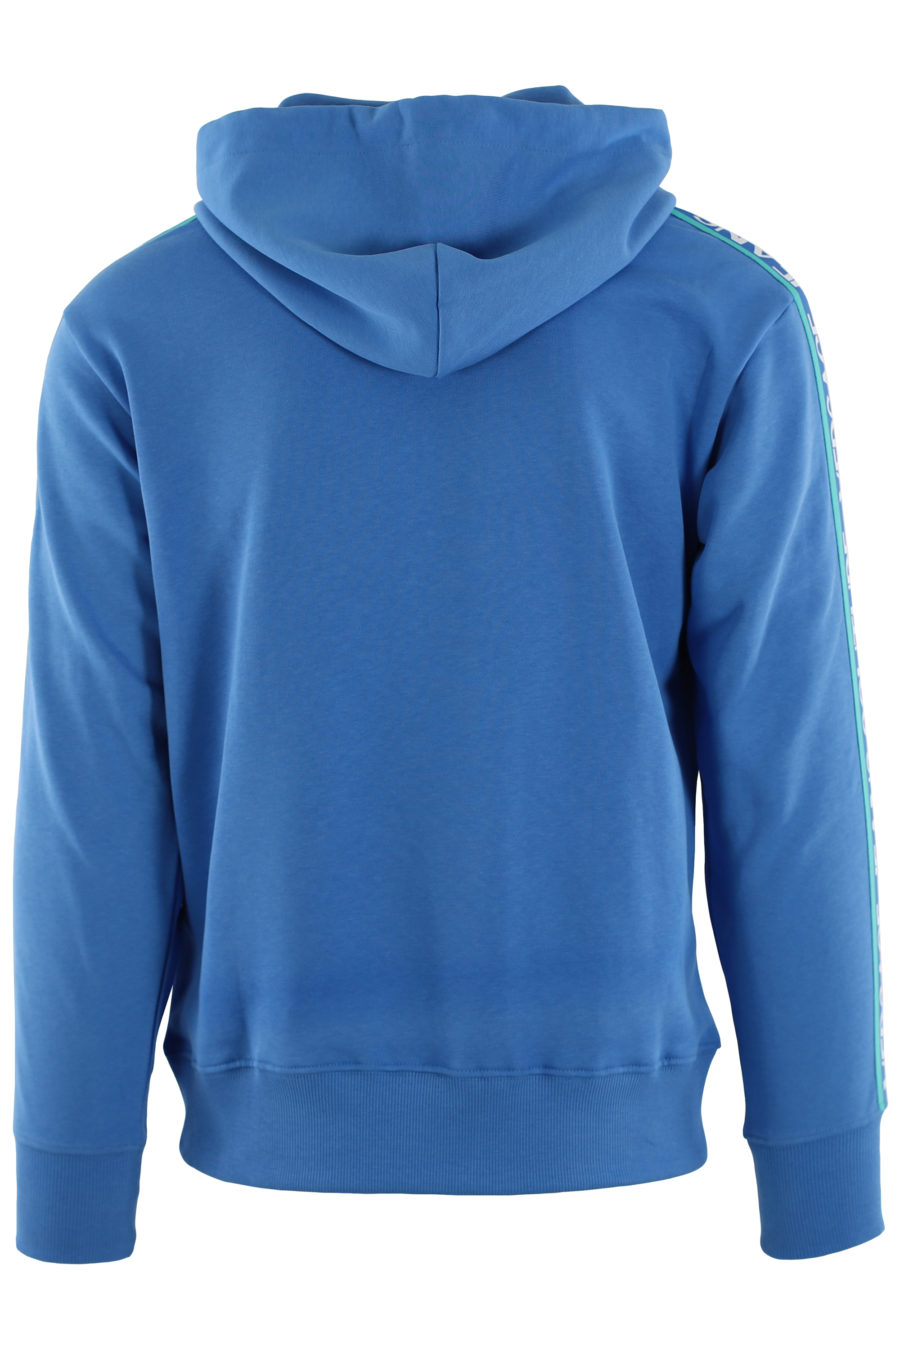 Blaues Sweatshirt mit Kapuze und blauer Schleife mit Logo - IMG 0453